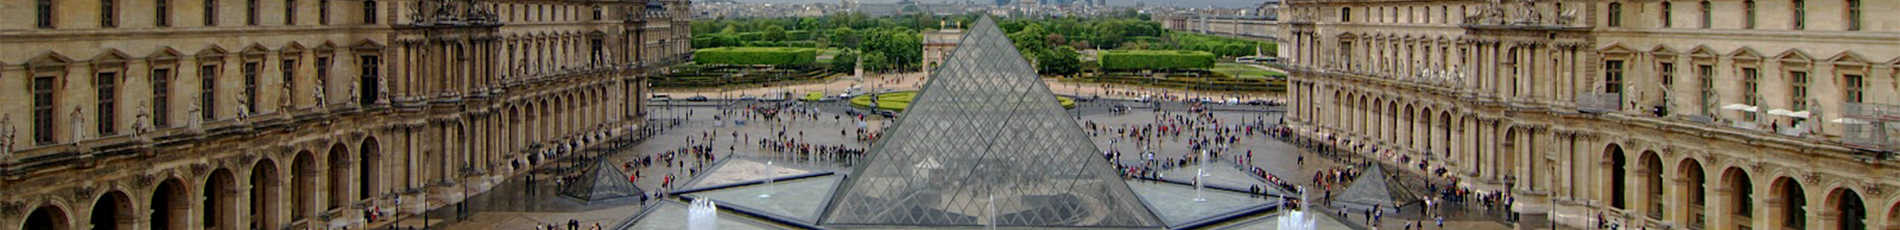 Chantier du Louvre par Adrénaline